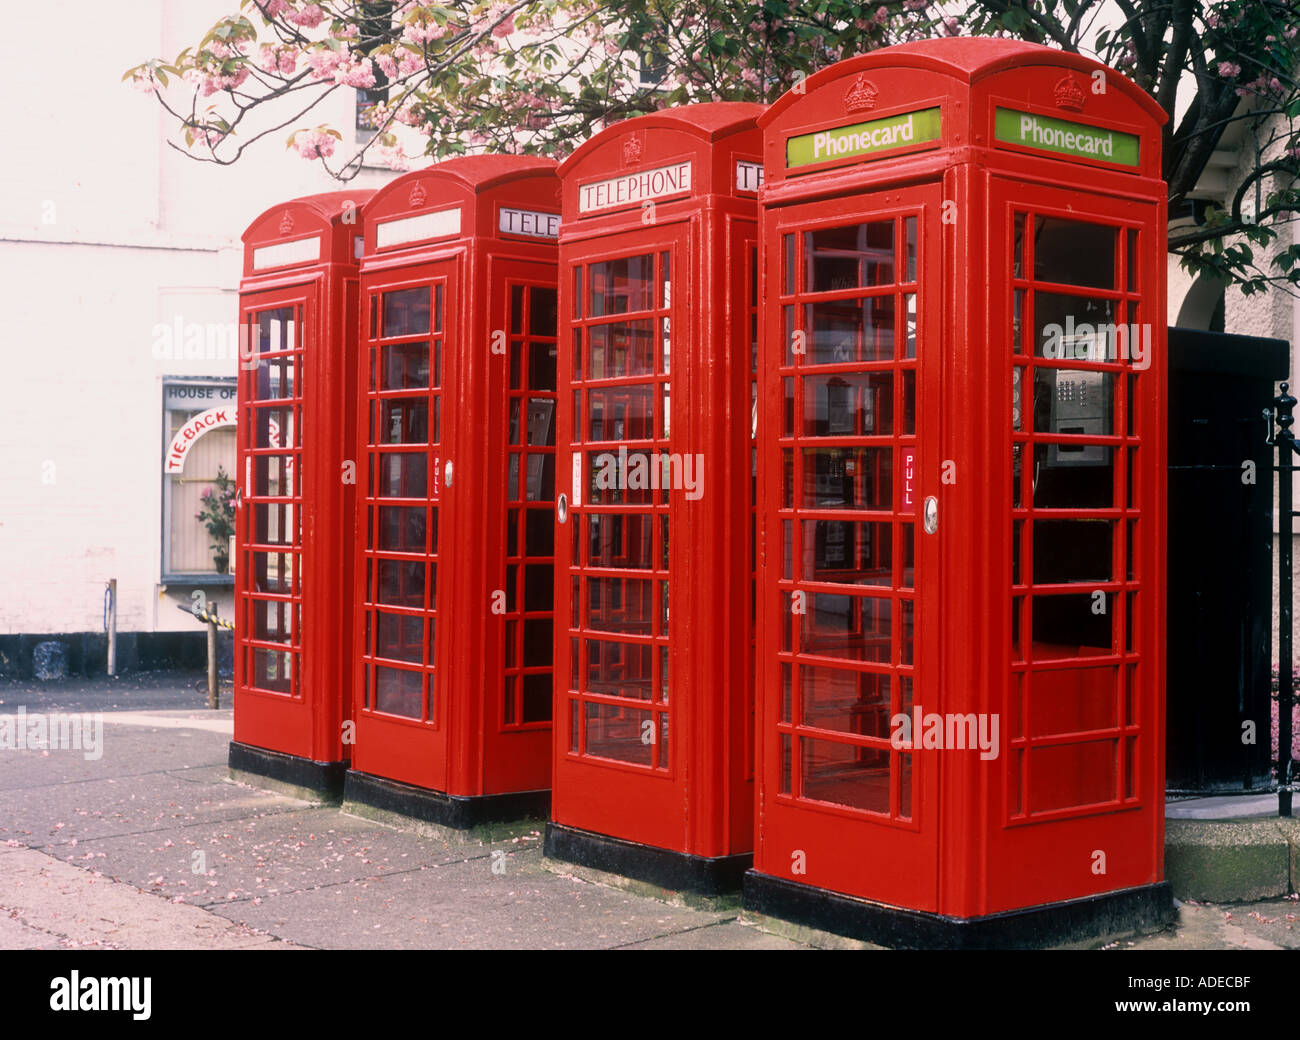 Four telephone boxes, Truro, Cornwall, UK Stock Photo